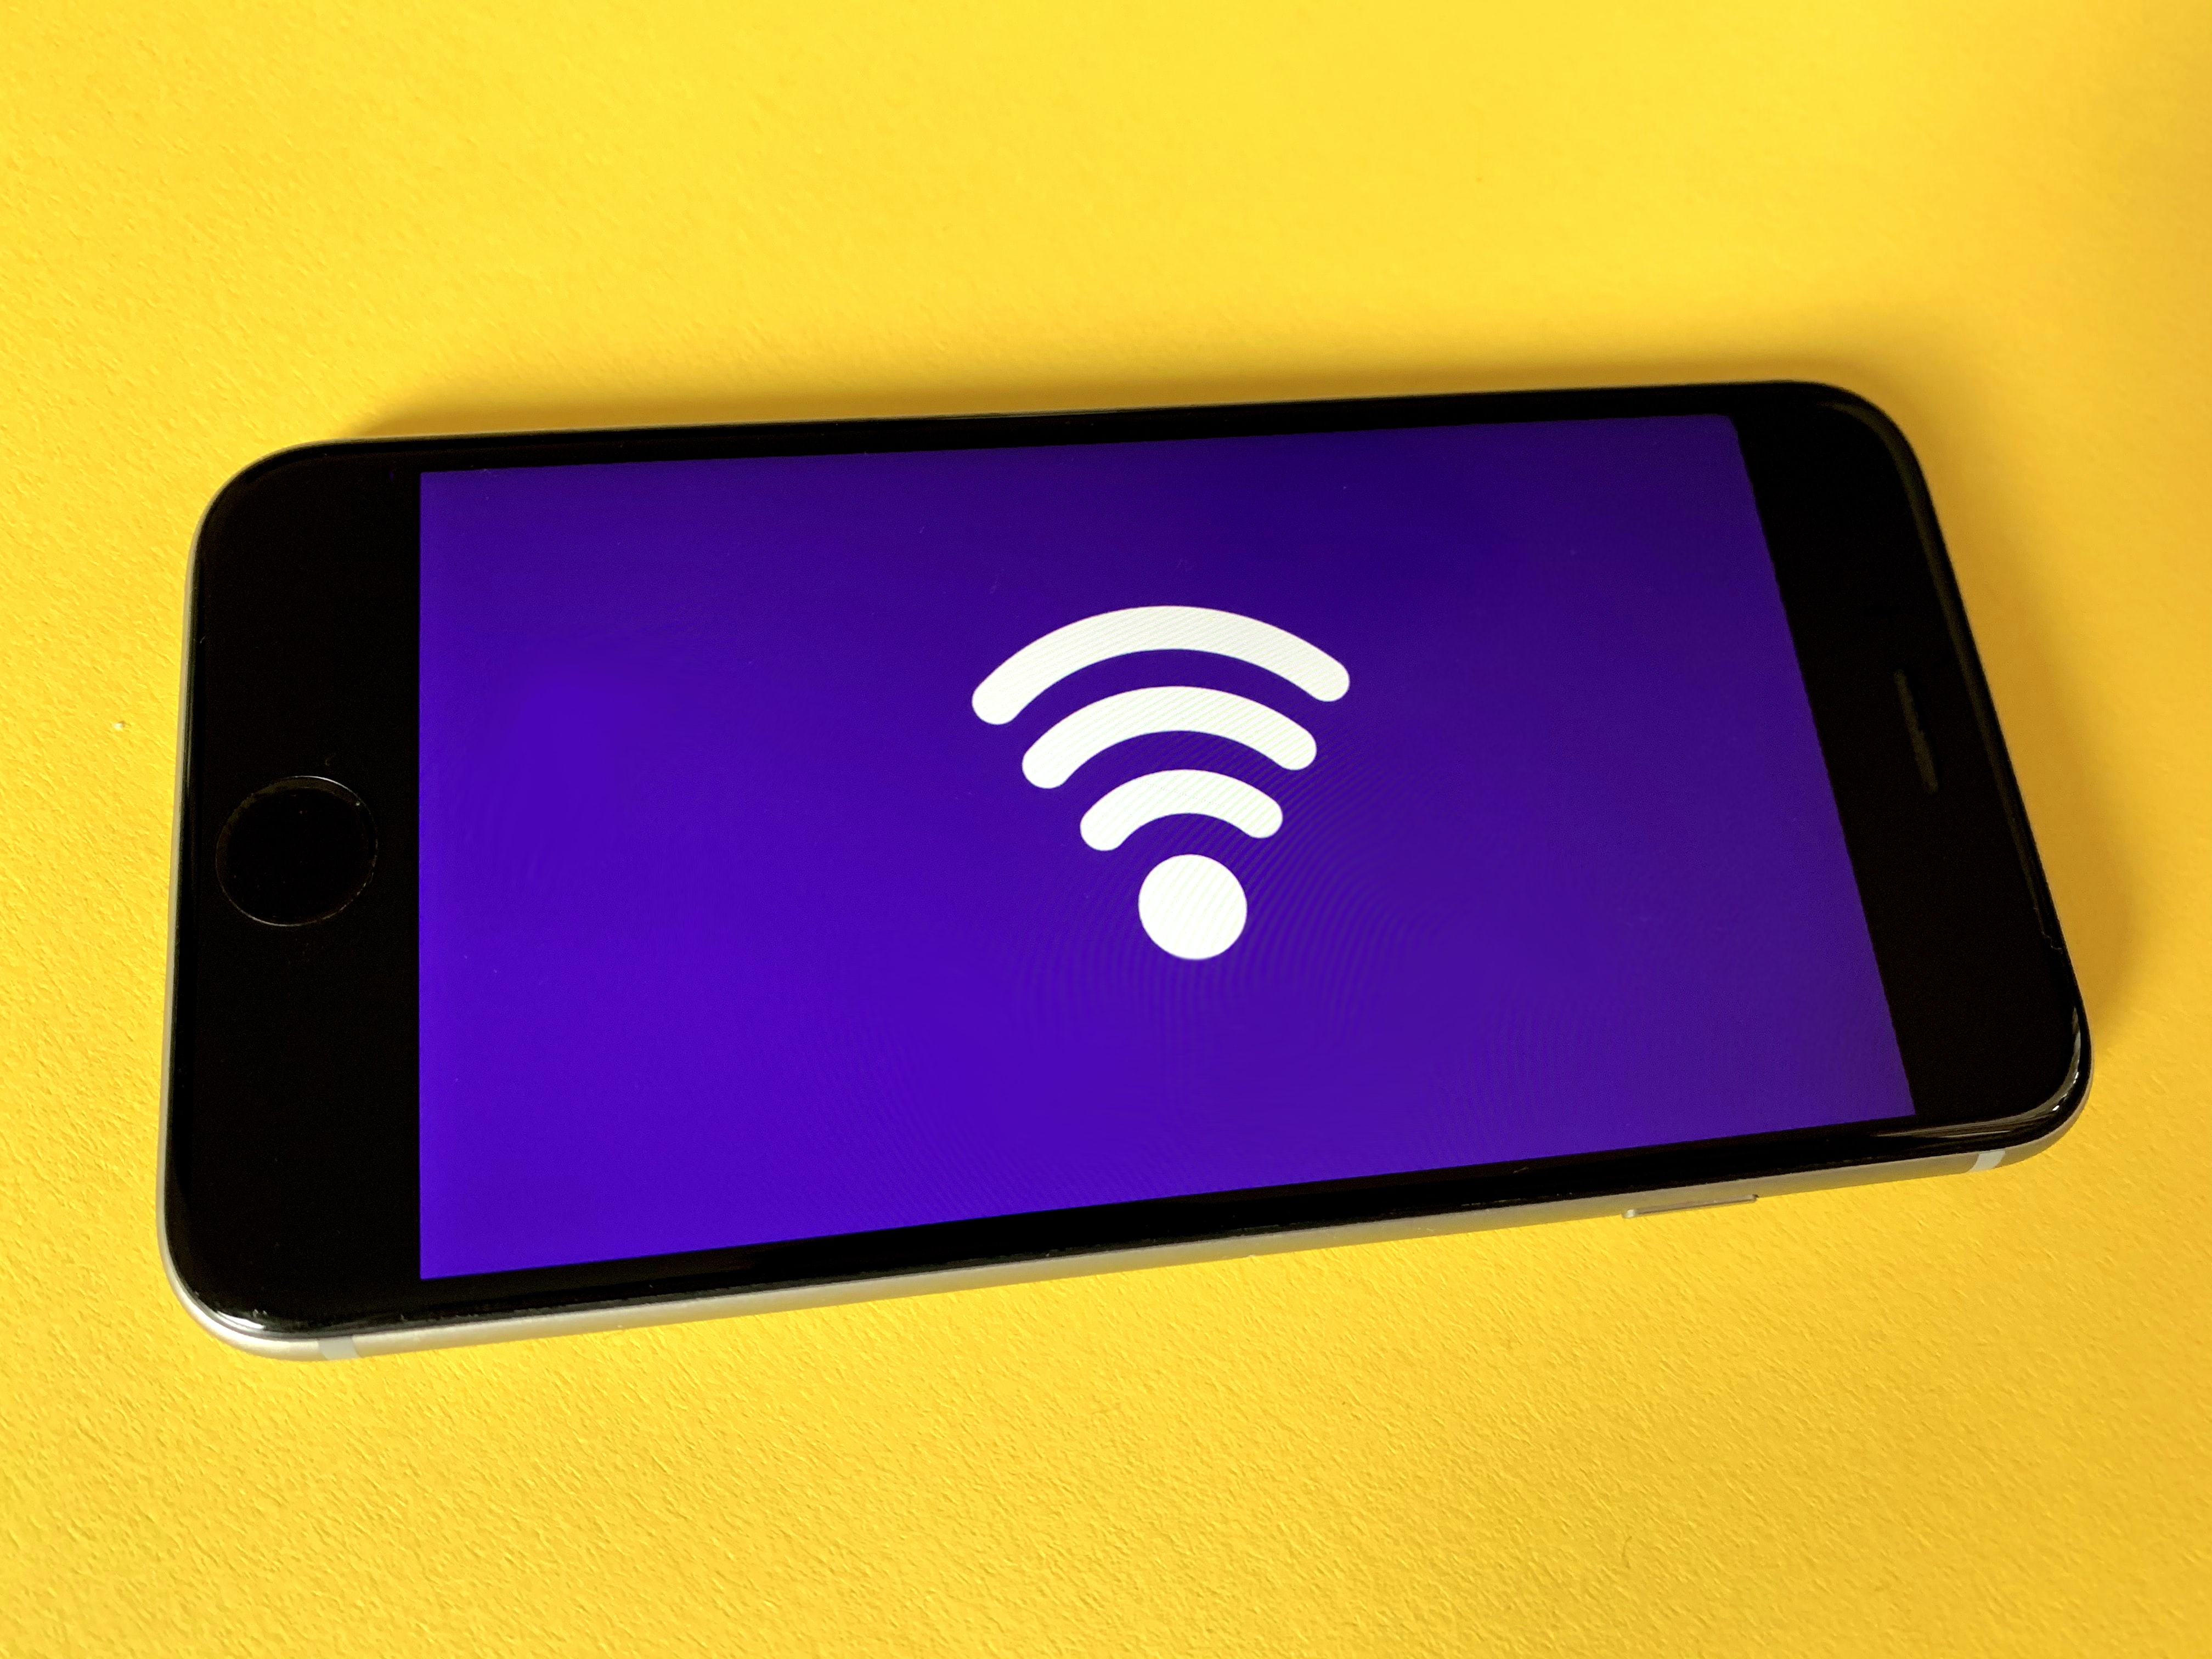 Como descobrir a senha do Wi-Fi em que você já está conectado – Tecnoblog